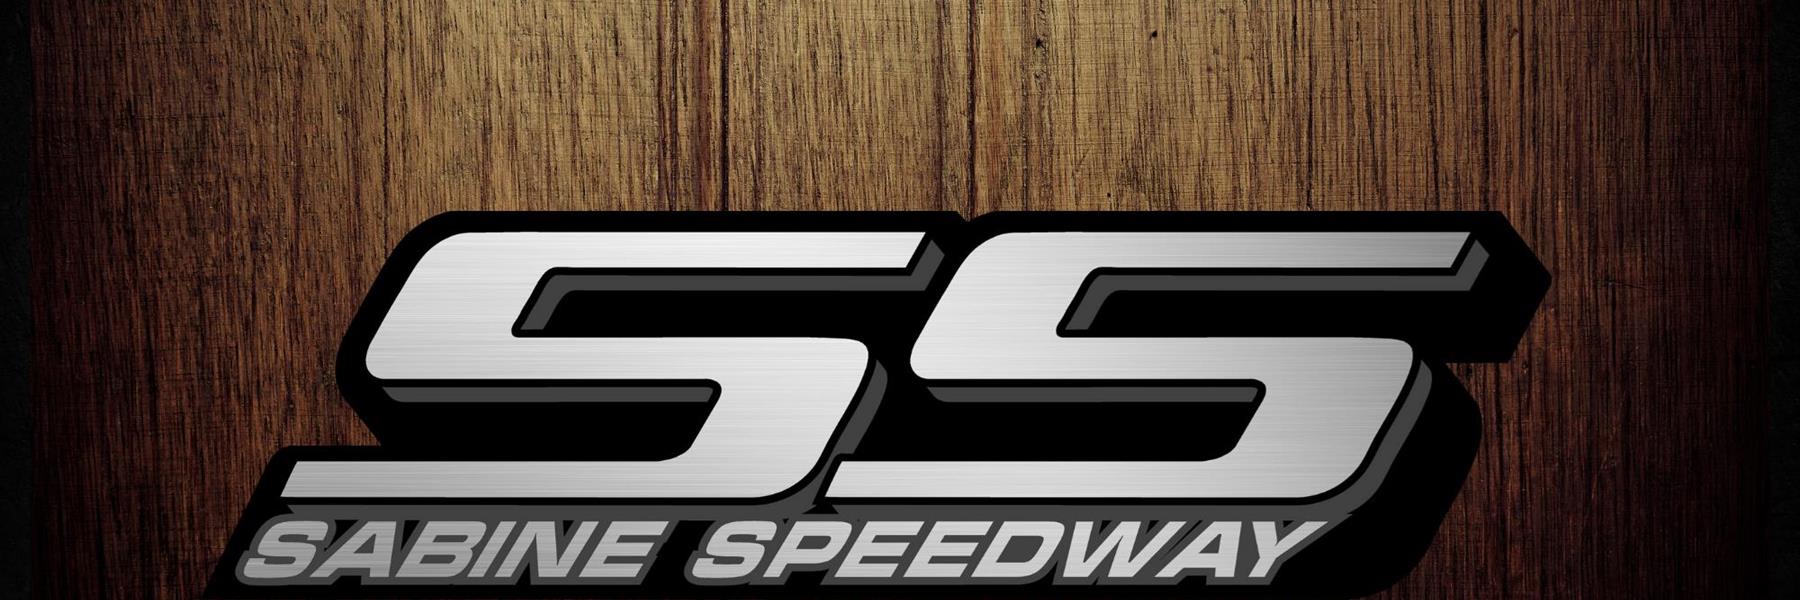 9/17/2022 - Sabine Speedway